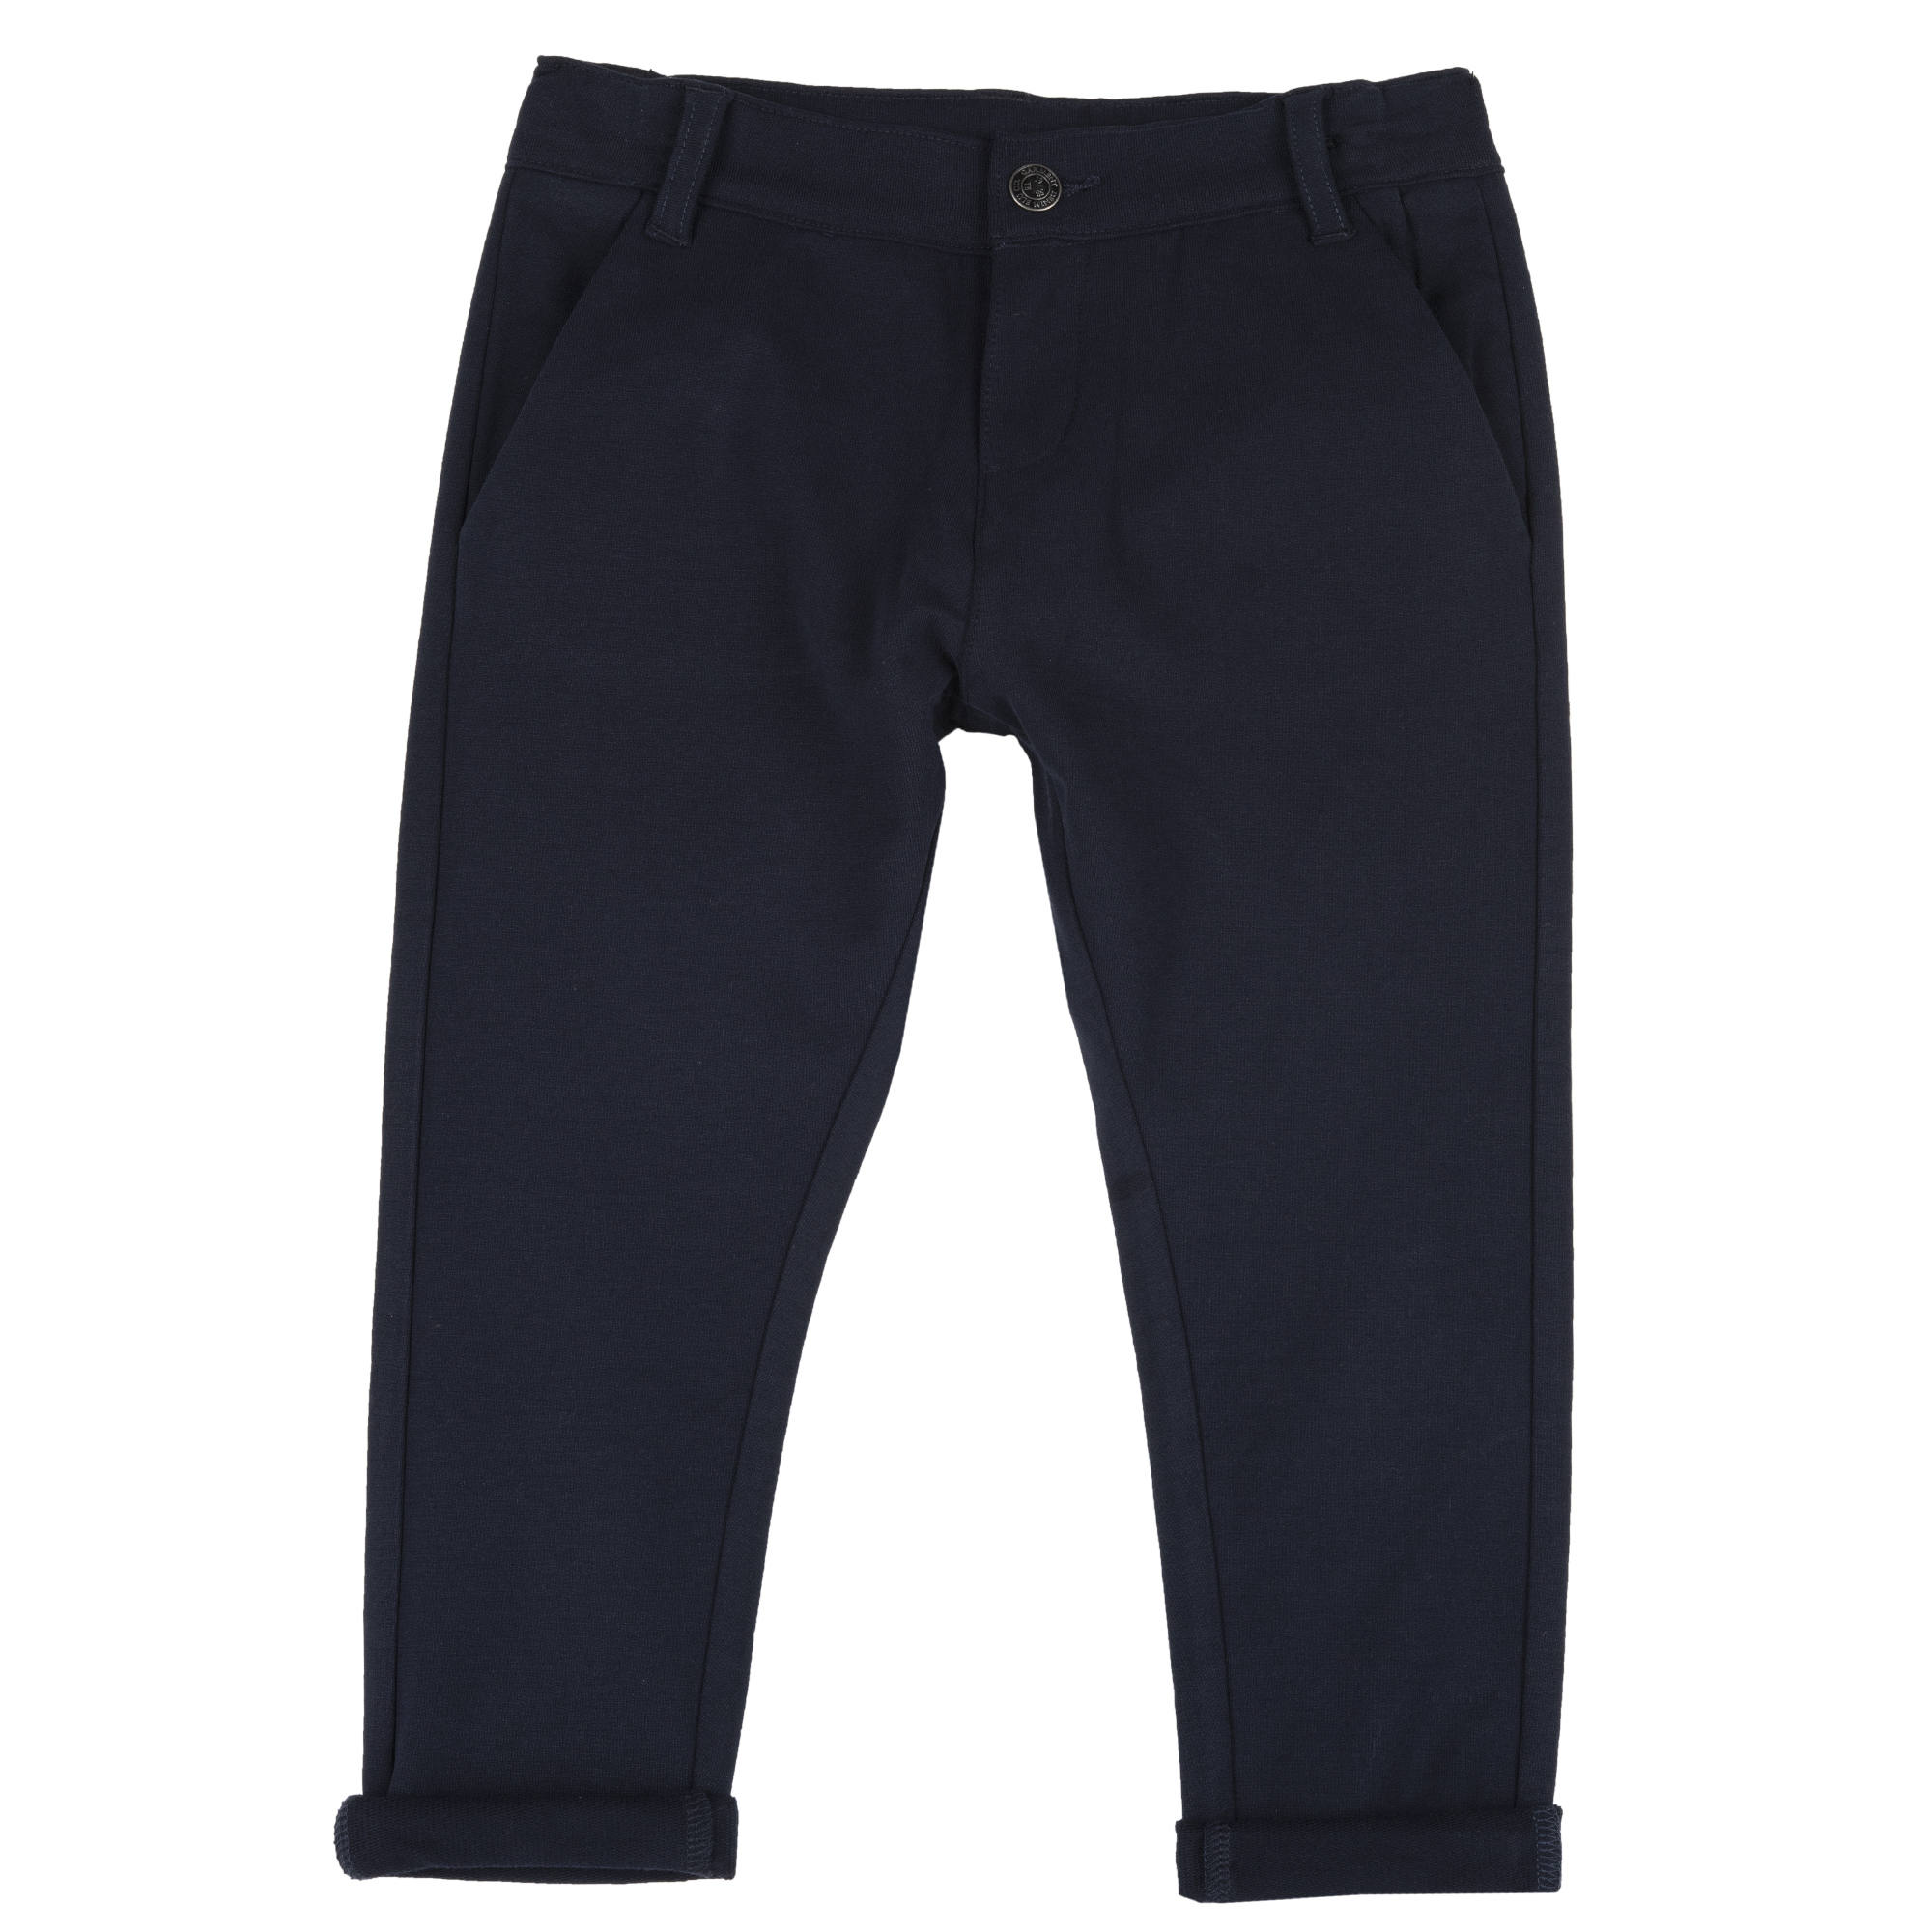 Pantaloni Copii Chicco, Albastru Inchis, 08691-63mc